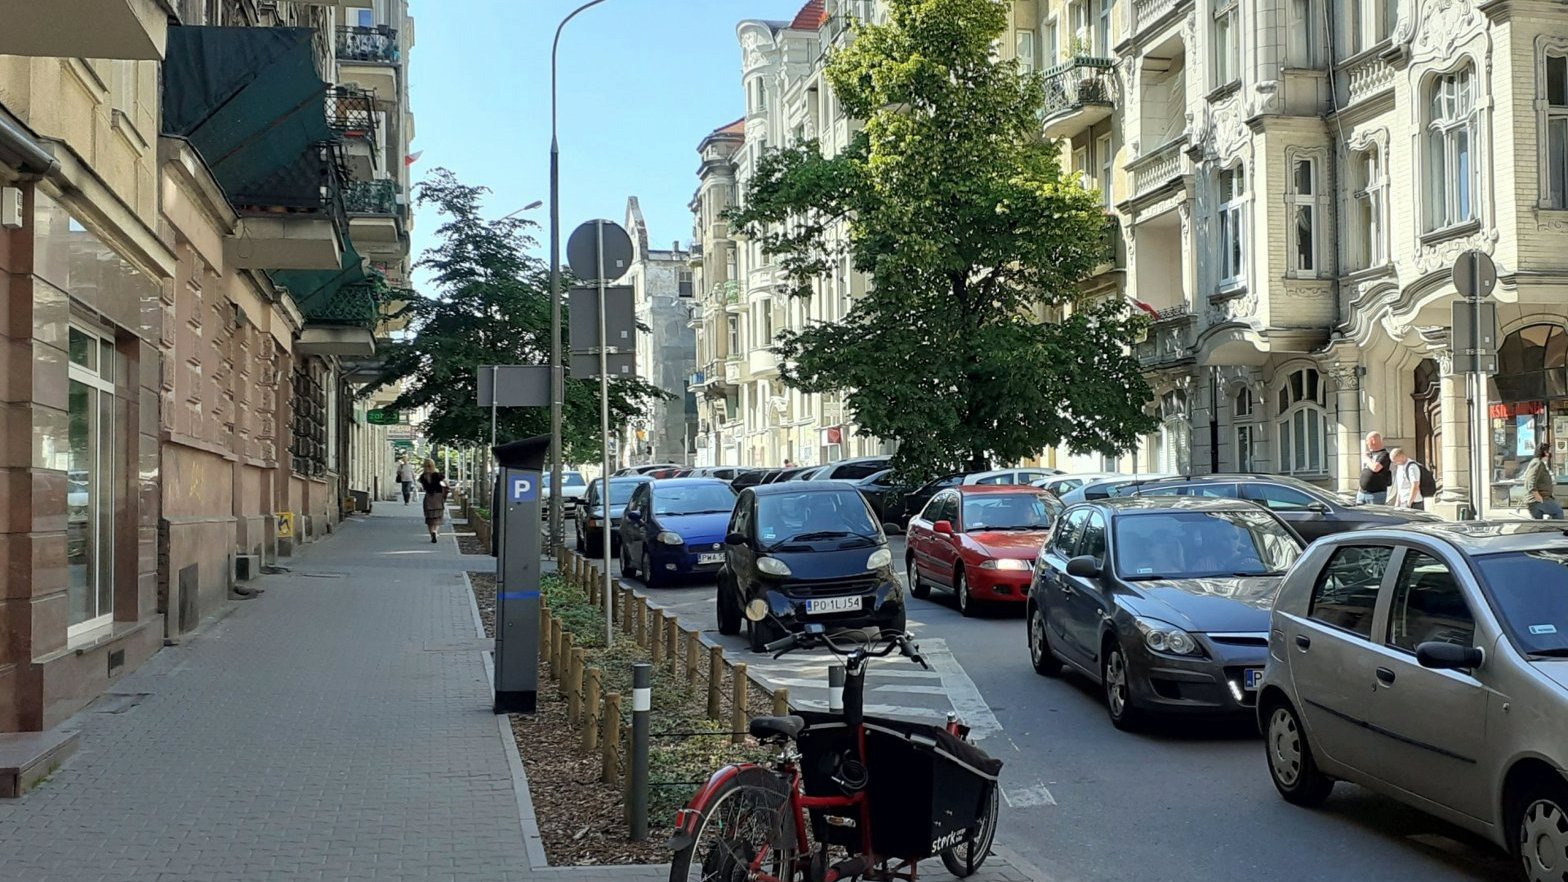 ulica z zabytkowymi budynkami, auta na jedni i nowo posadzona zieleń